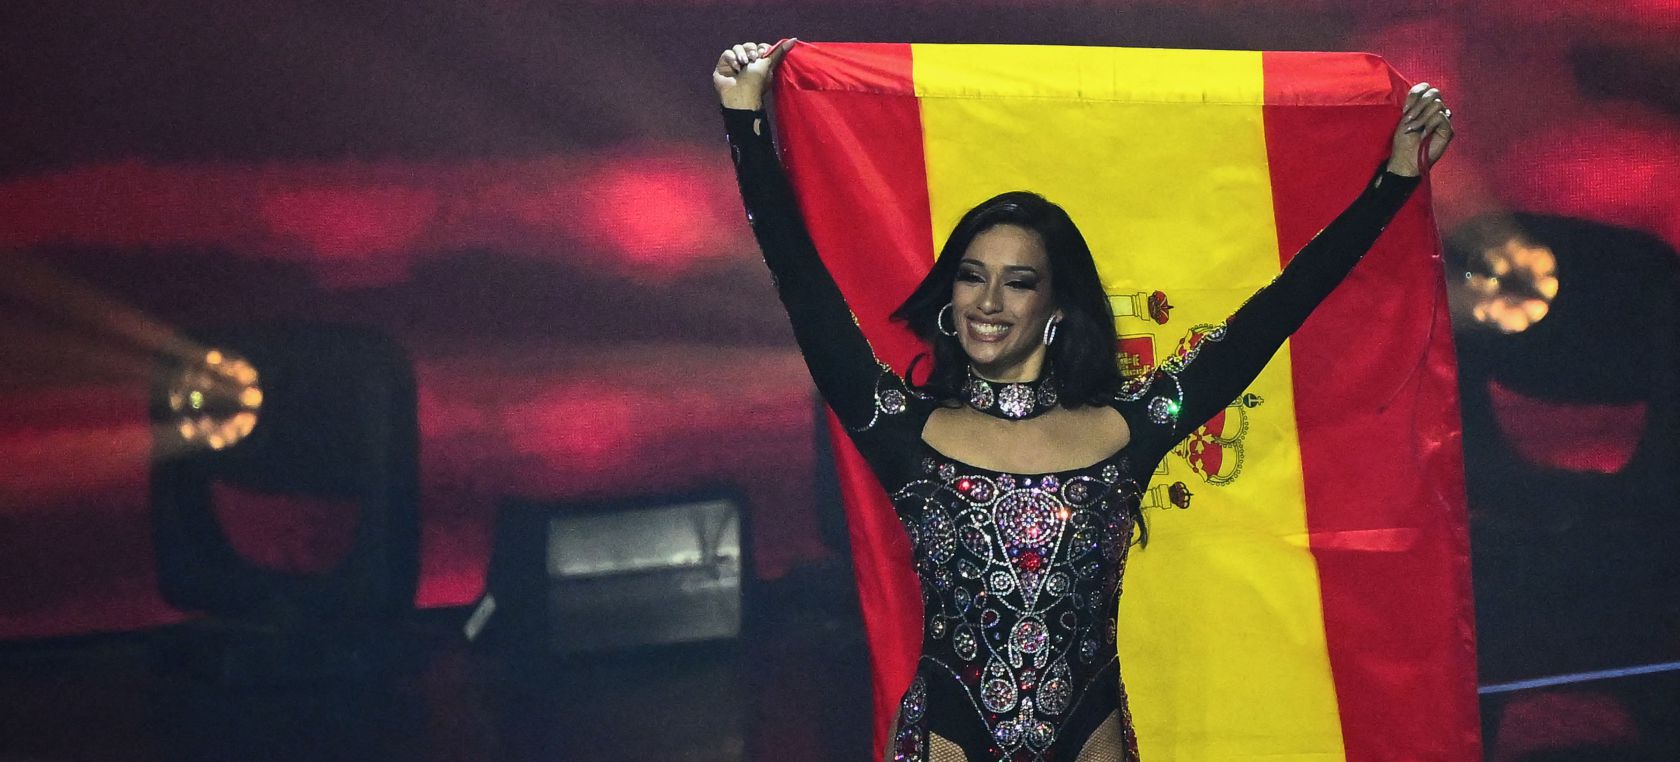 Chanel devuelve la ilusión a España: así han sido las reacciones al 'chanelazo' en Eurovisión 2022